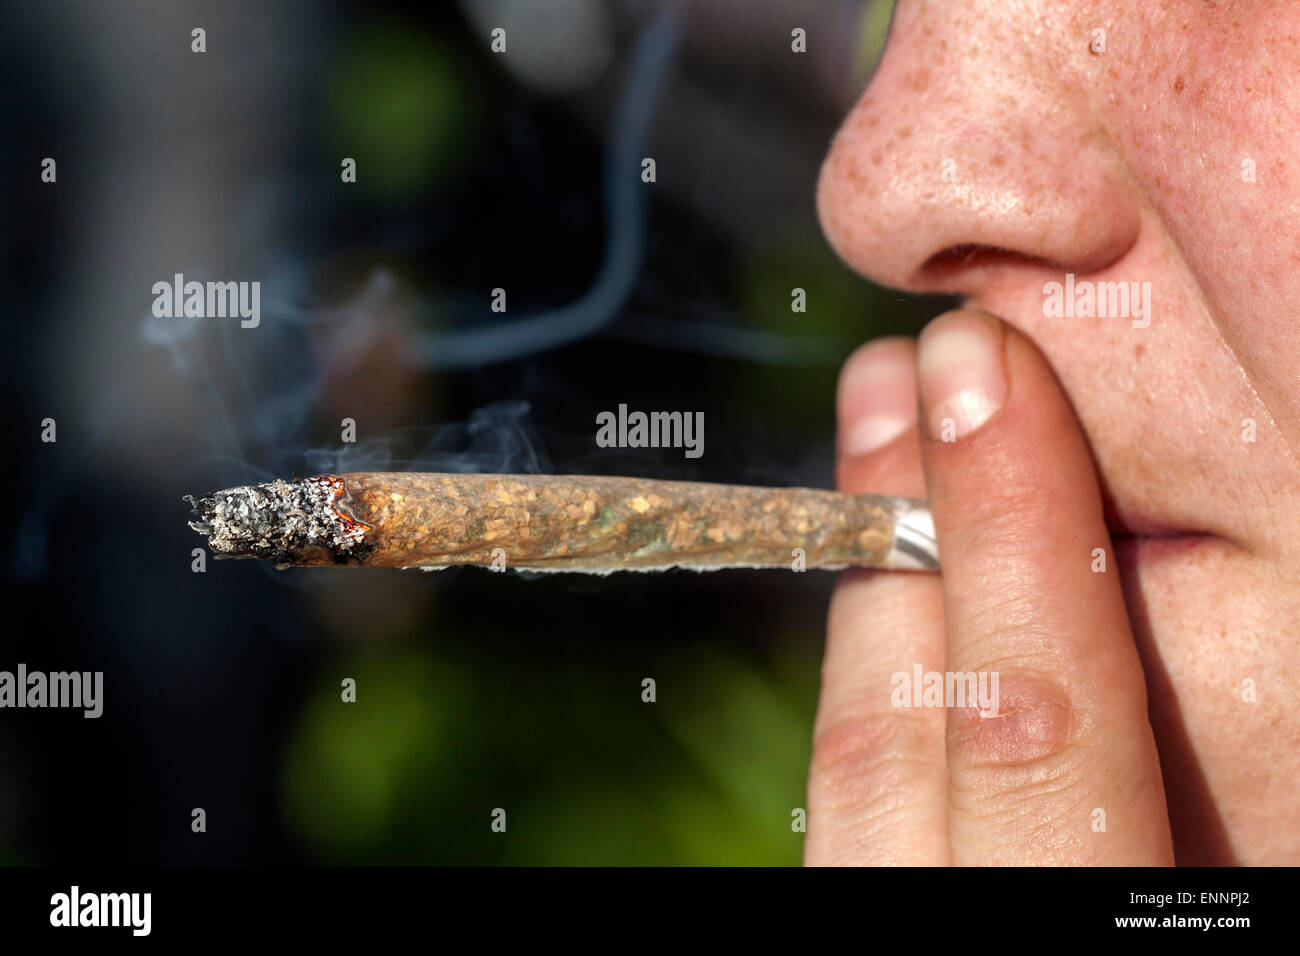 Close up, man smoking marijuana joint Stock Photo